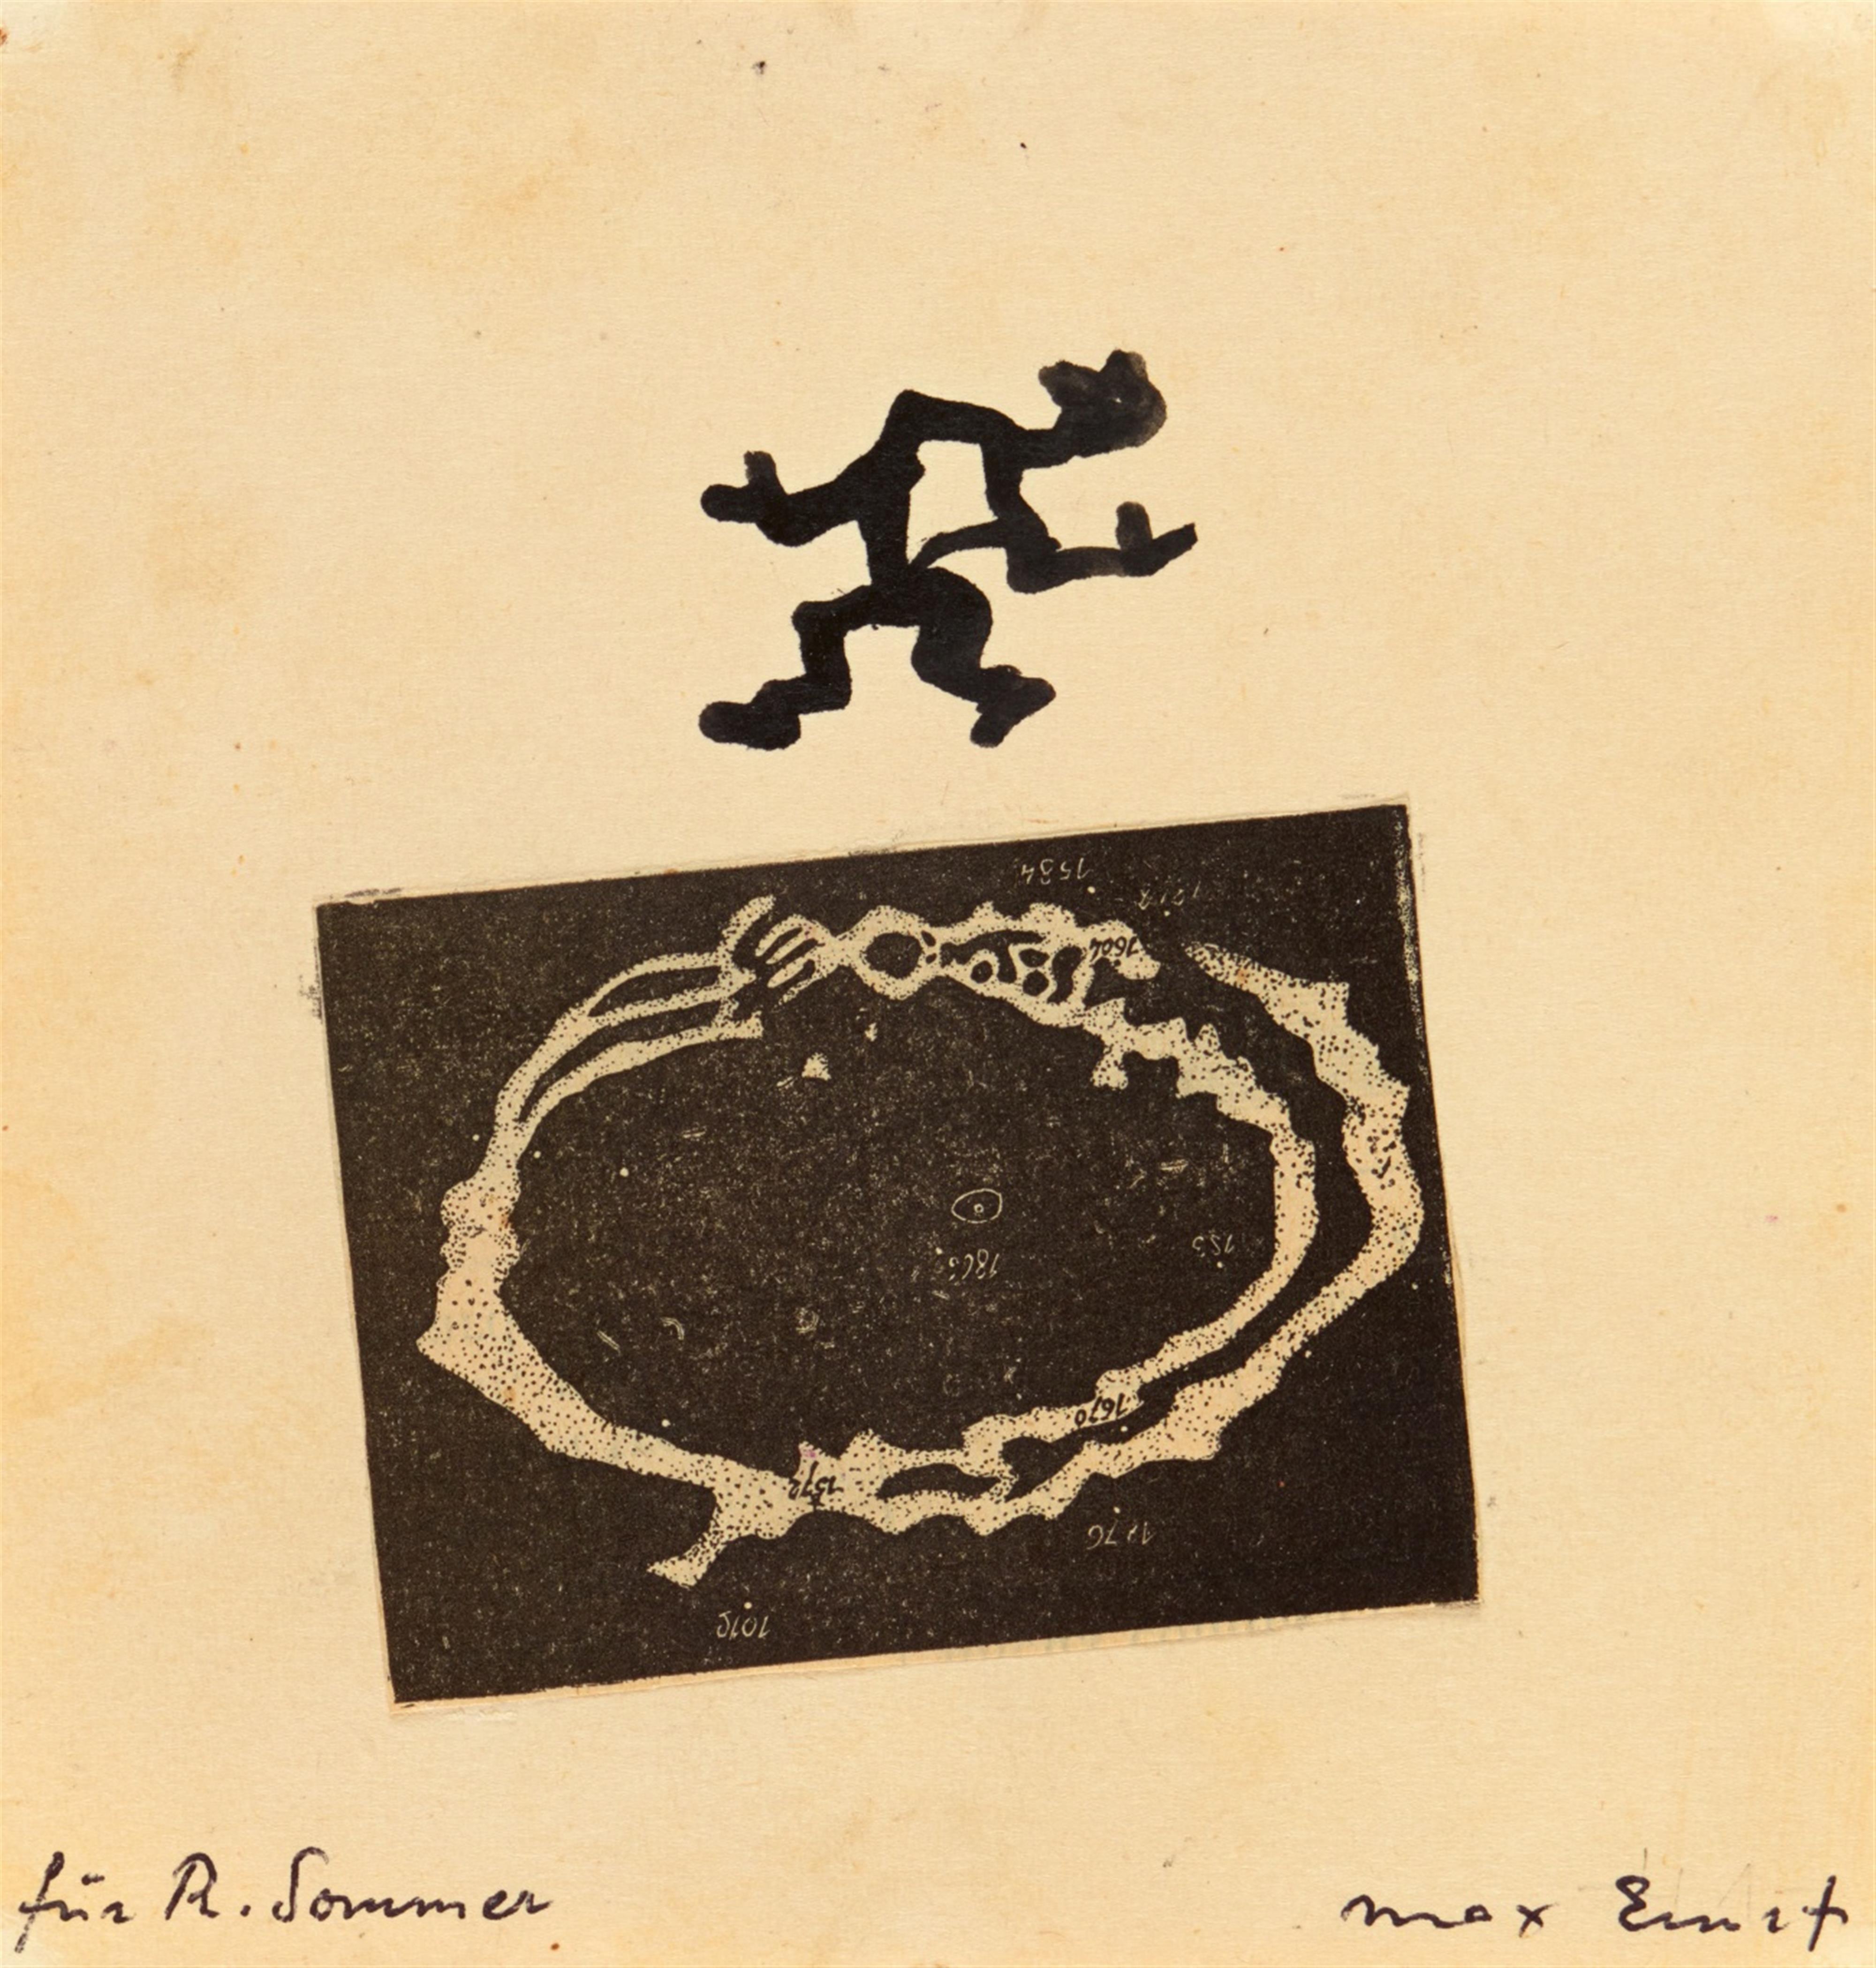 Max Ernst - Zu: John Russell, Max Ernst. Leben und Werk, Köln 1966 - image-1